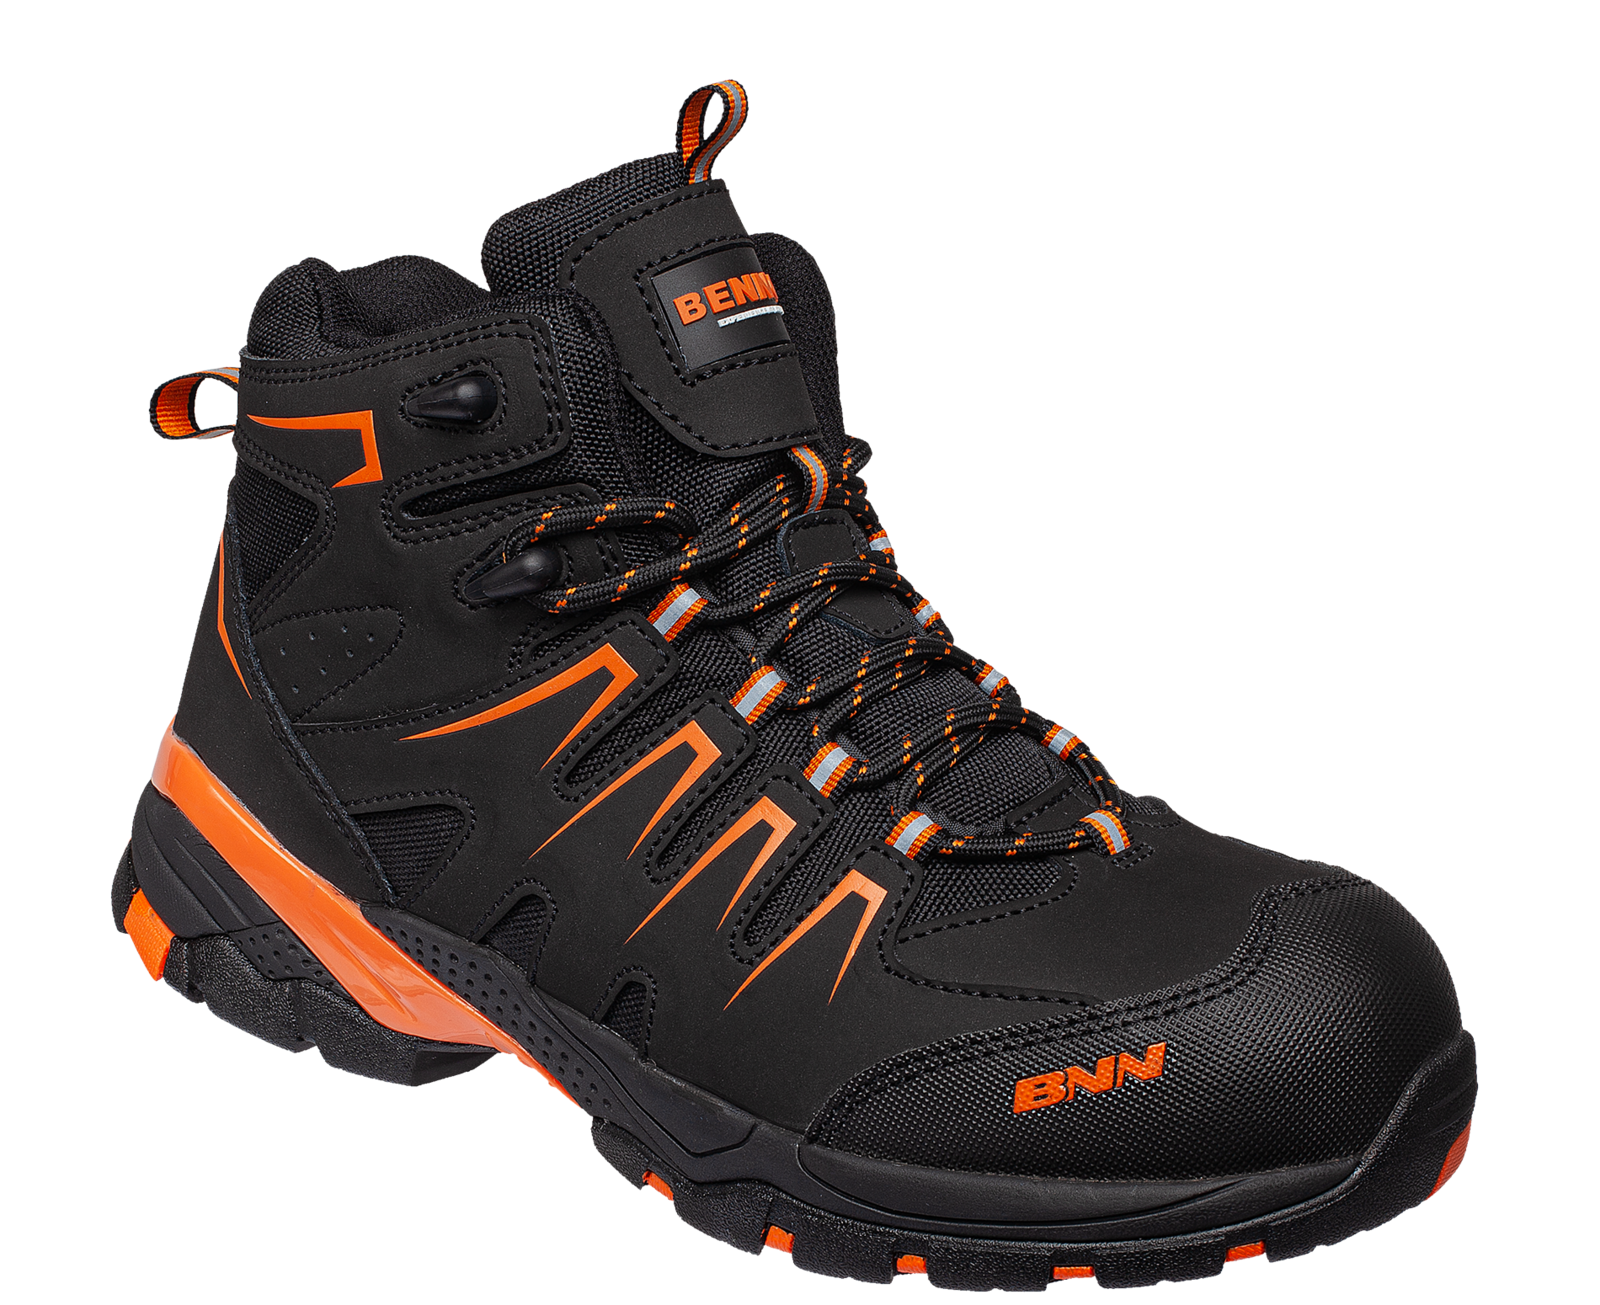 Bezpečnostná členková obuv Bennon Orlando XTR S3 NM High - veľkosť: 42, farba: čierna/oranžová